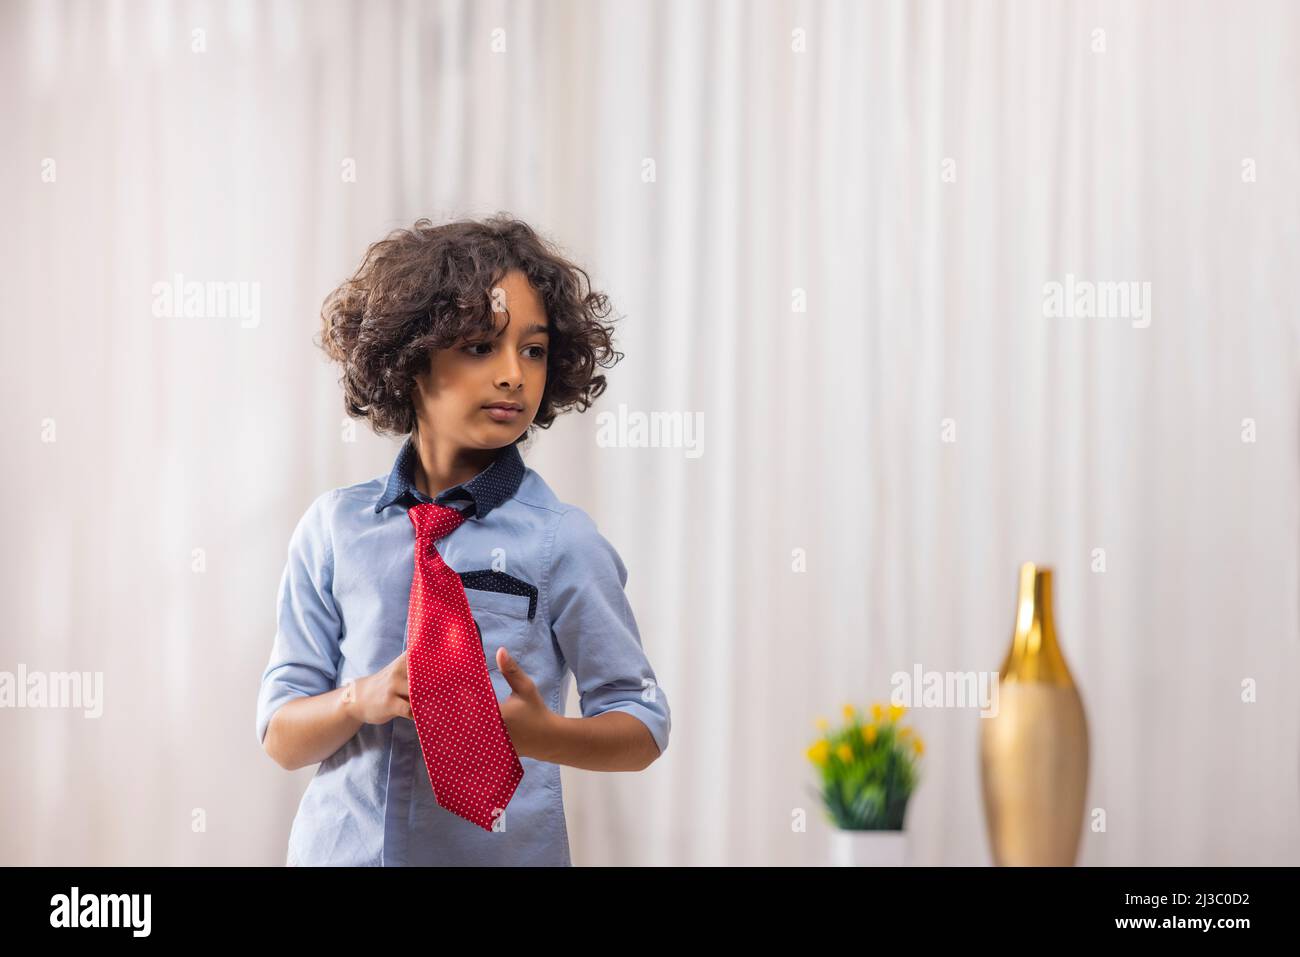 Porträt eines Jungen in roter Krawatte, der im Wohnzimmer steht Stockfoto